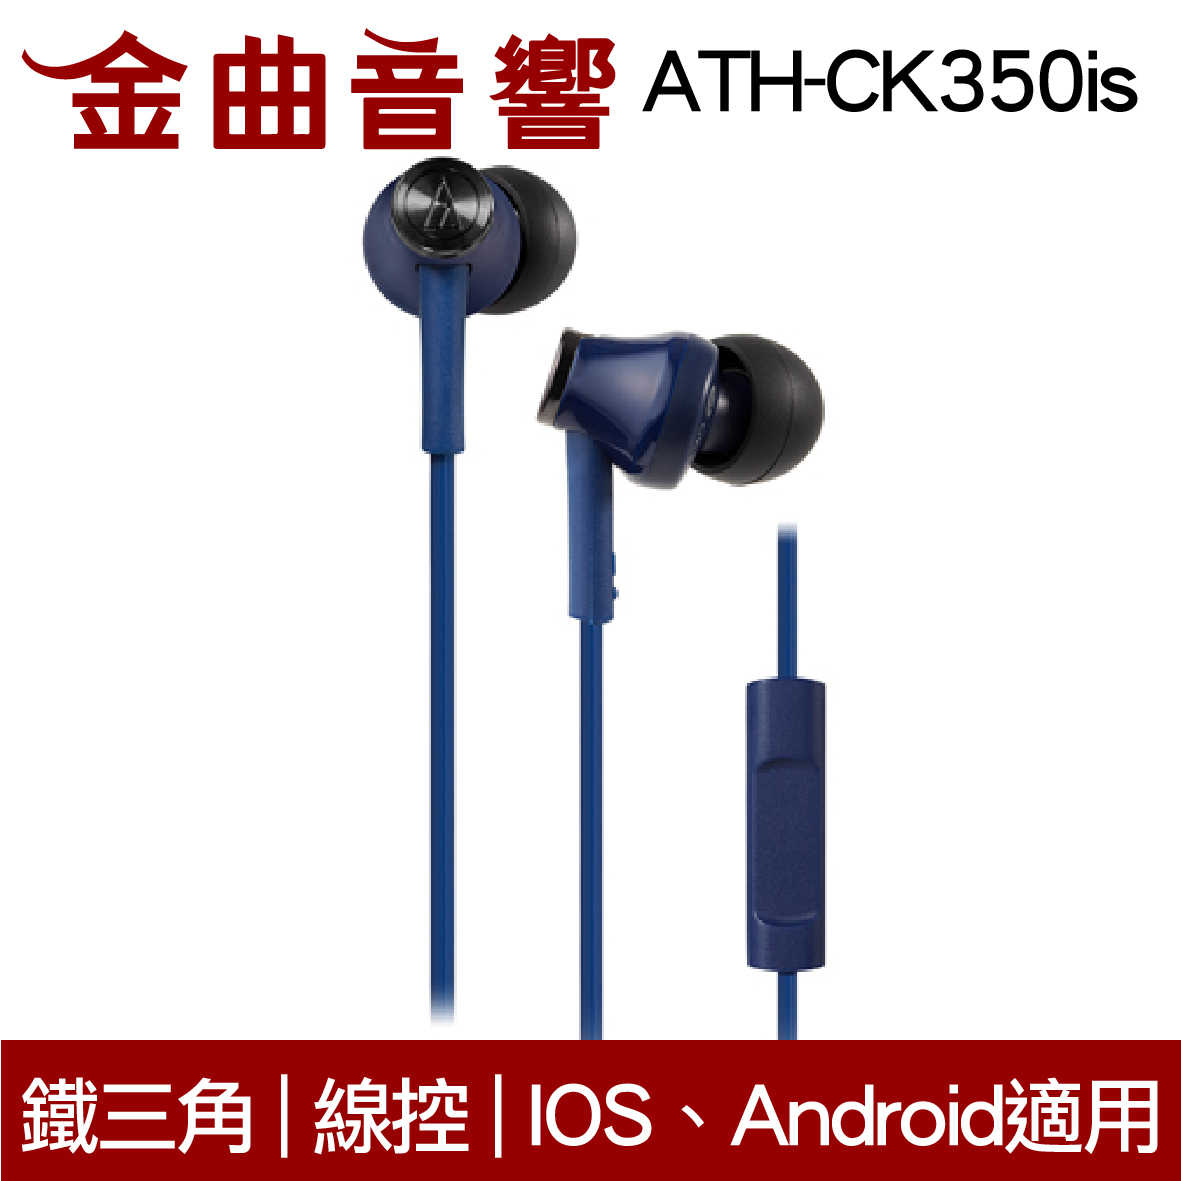 鐵三角 ATH-CK350iS 黑色 線控耳道式耳機 IPhone IOS安卓 適用 | 金曲音響